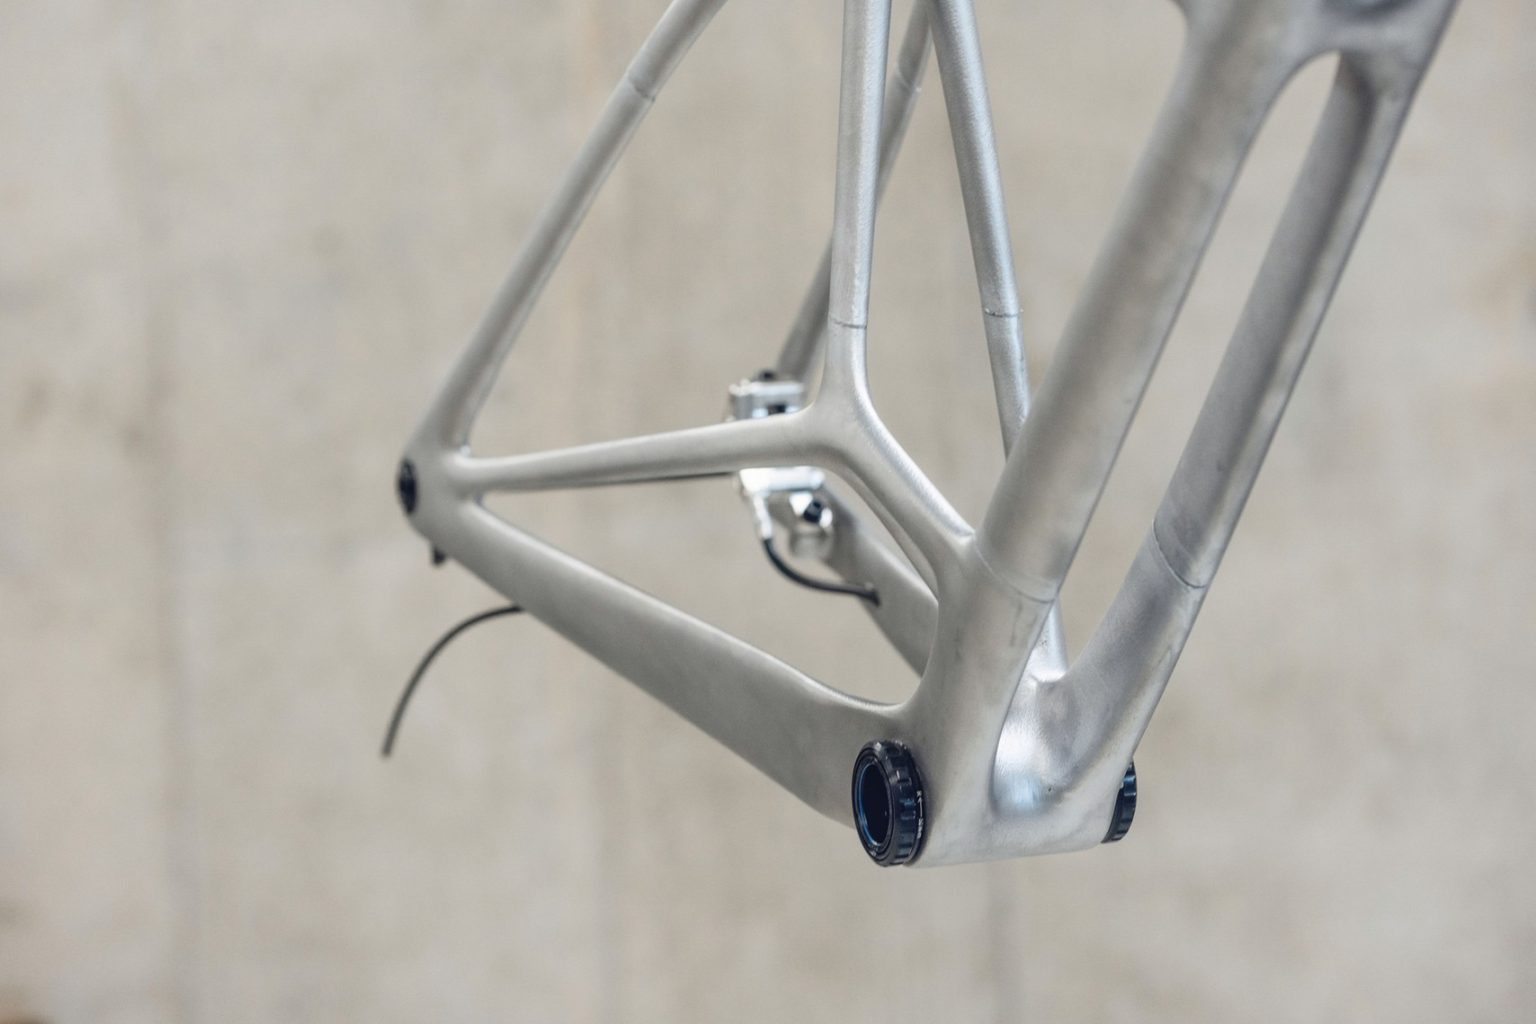 3Dプリントされた自転車のフレーム。3つのパーツに分かれて接着されている。出典：Bike-Magazine